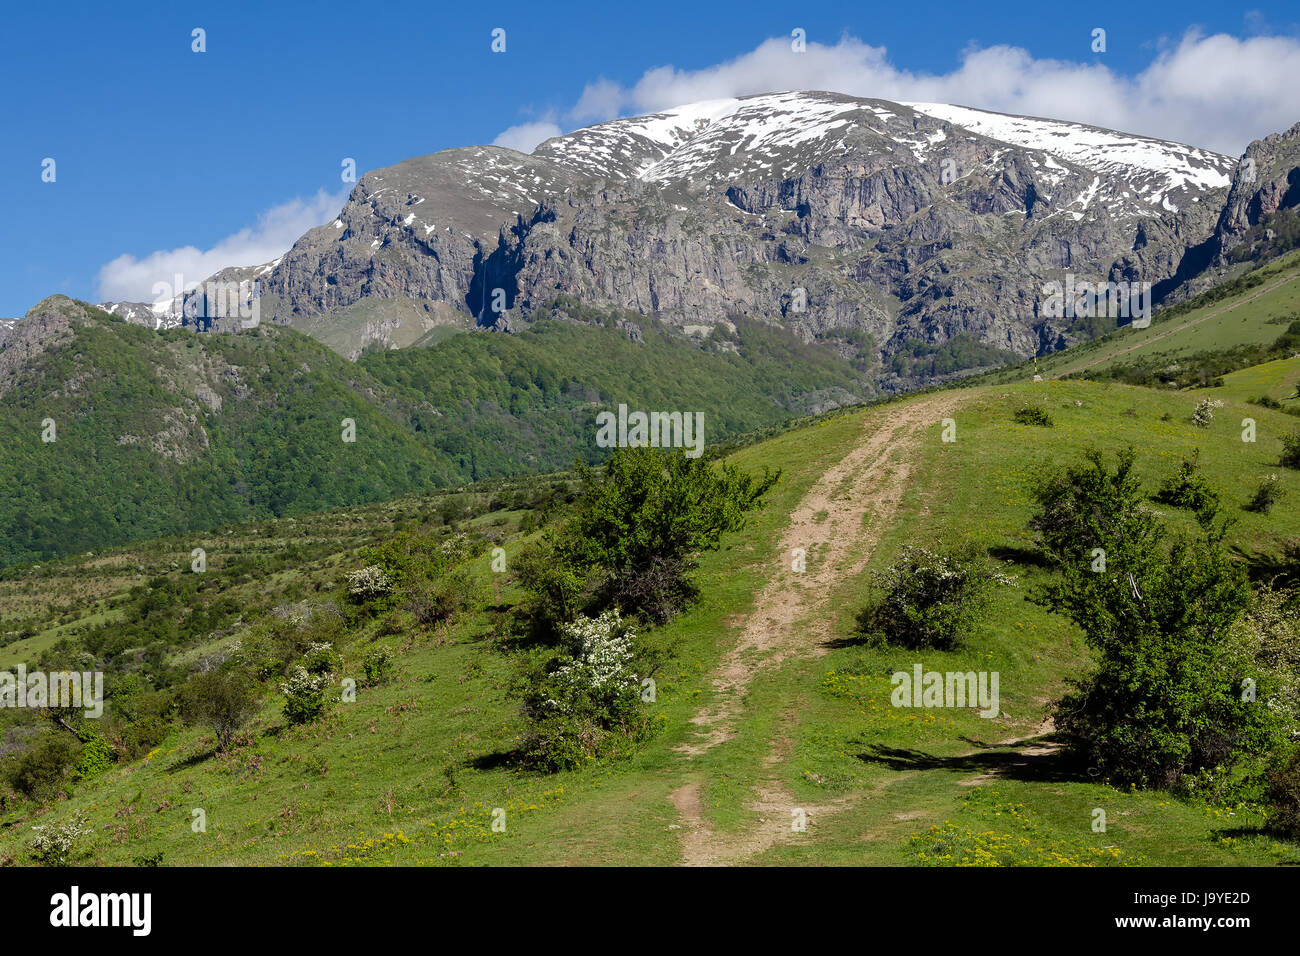 Green forest and tourist path to Botev peak, Stara Planina mountain, Bulgaria Stock Photo